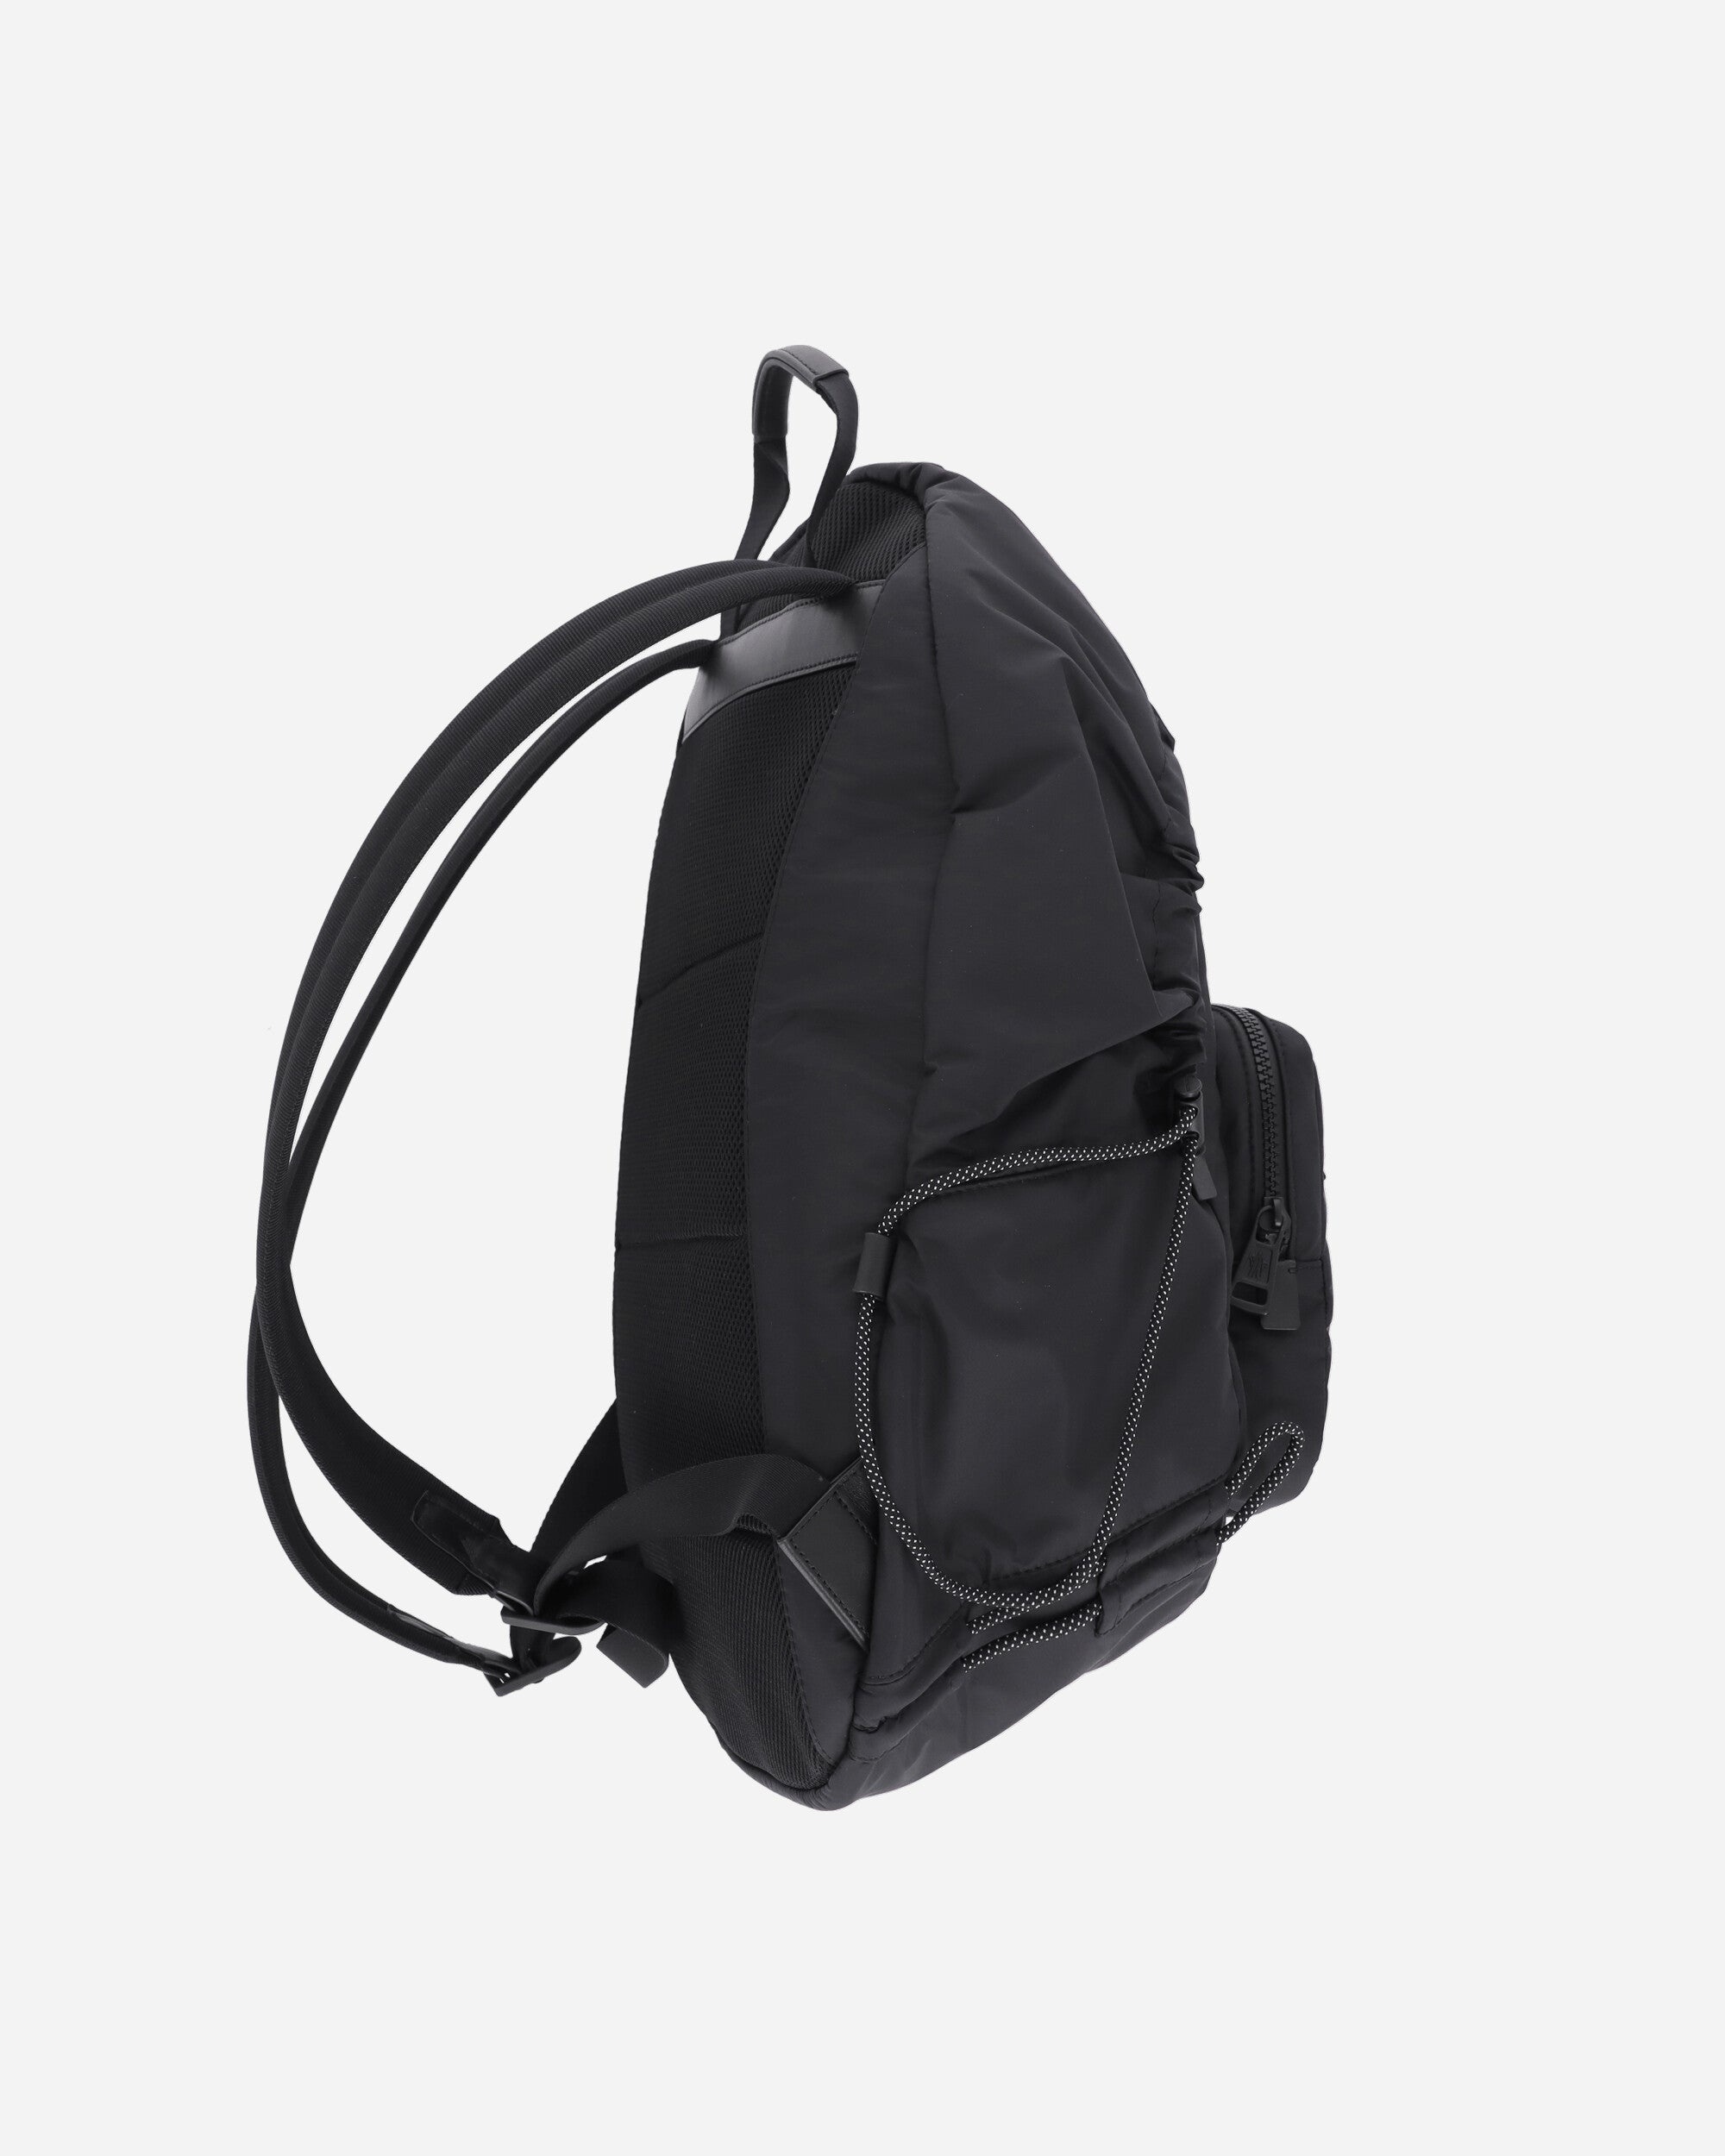 Makaio Backpack Black - 4